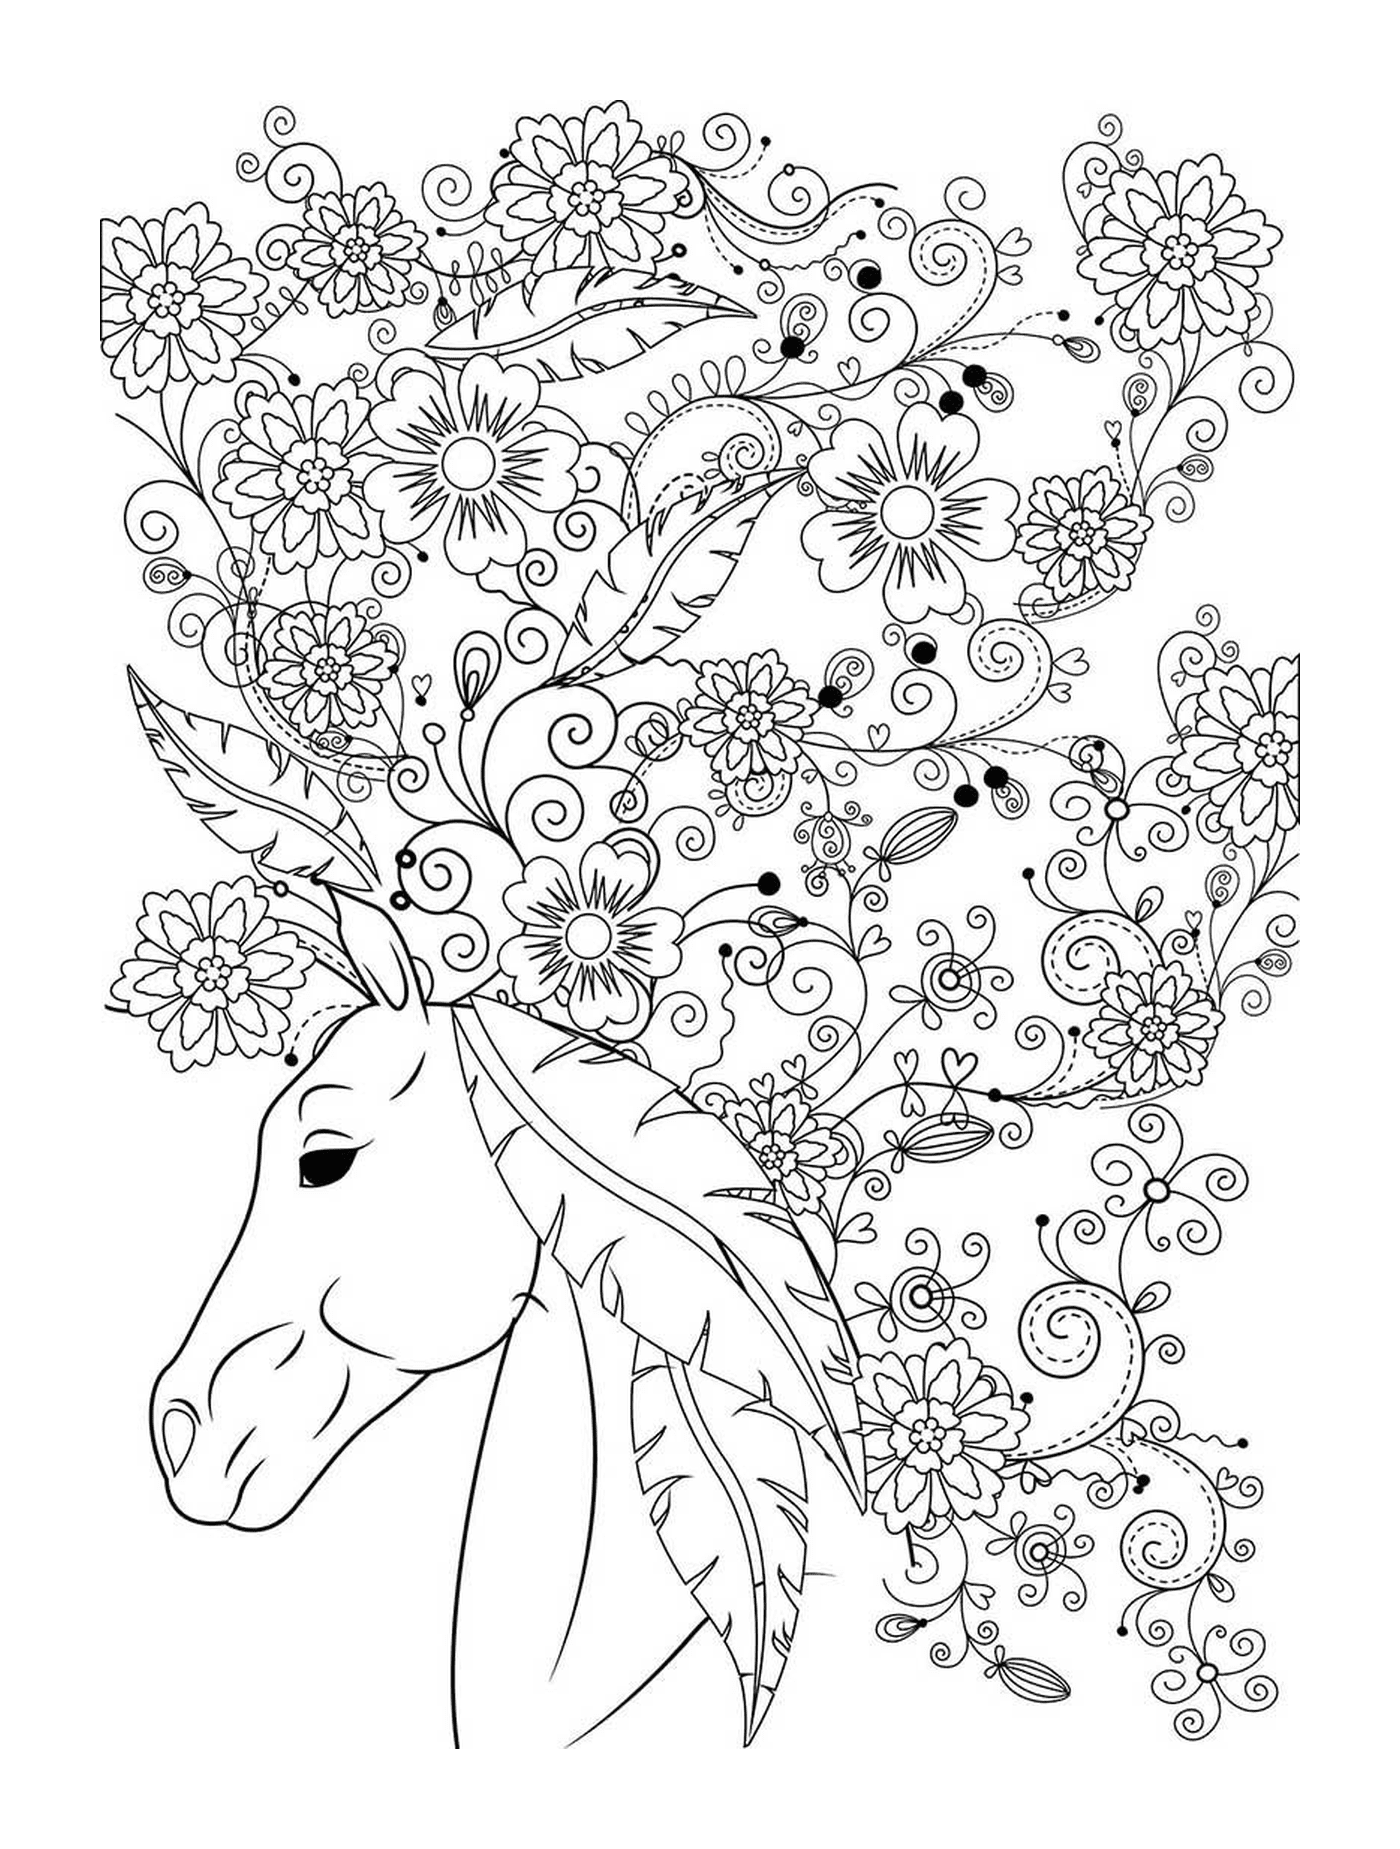  Un adulto di un cavallo con i fiori 